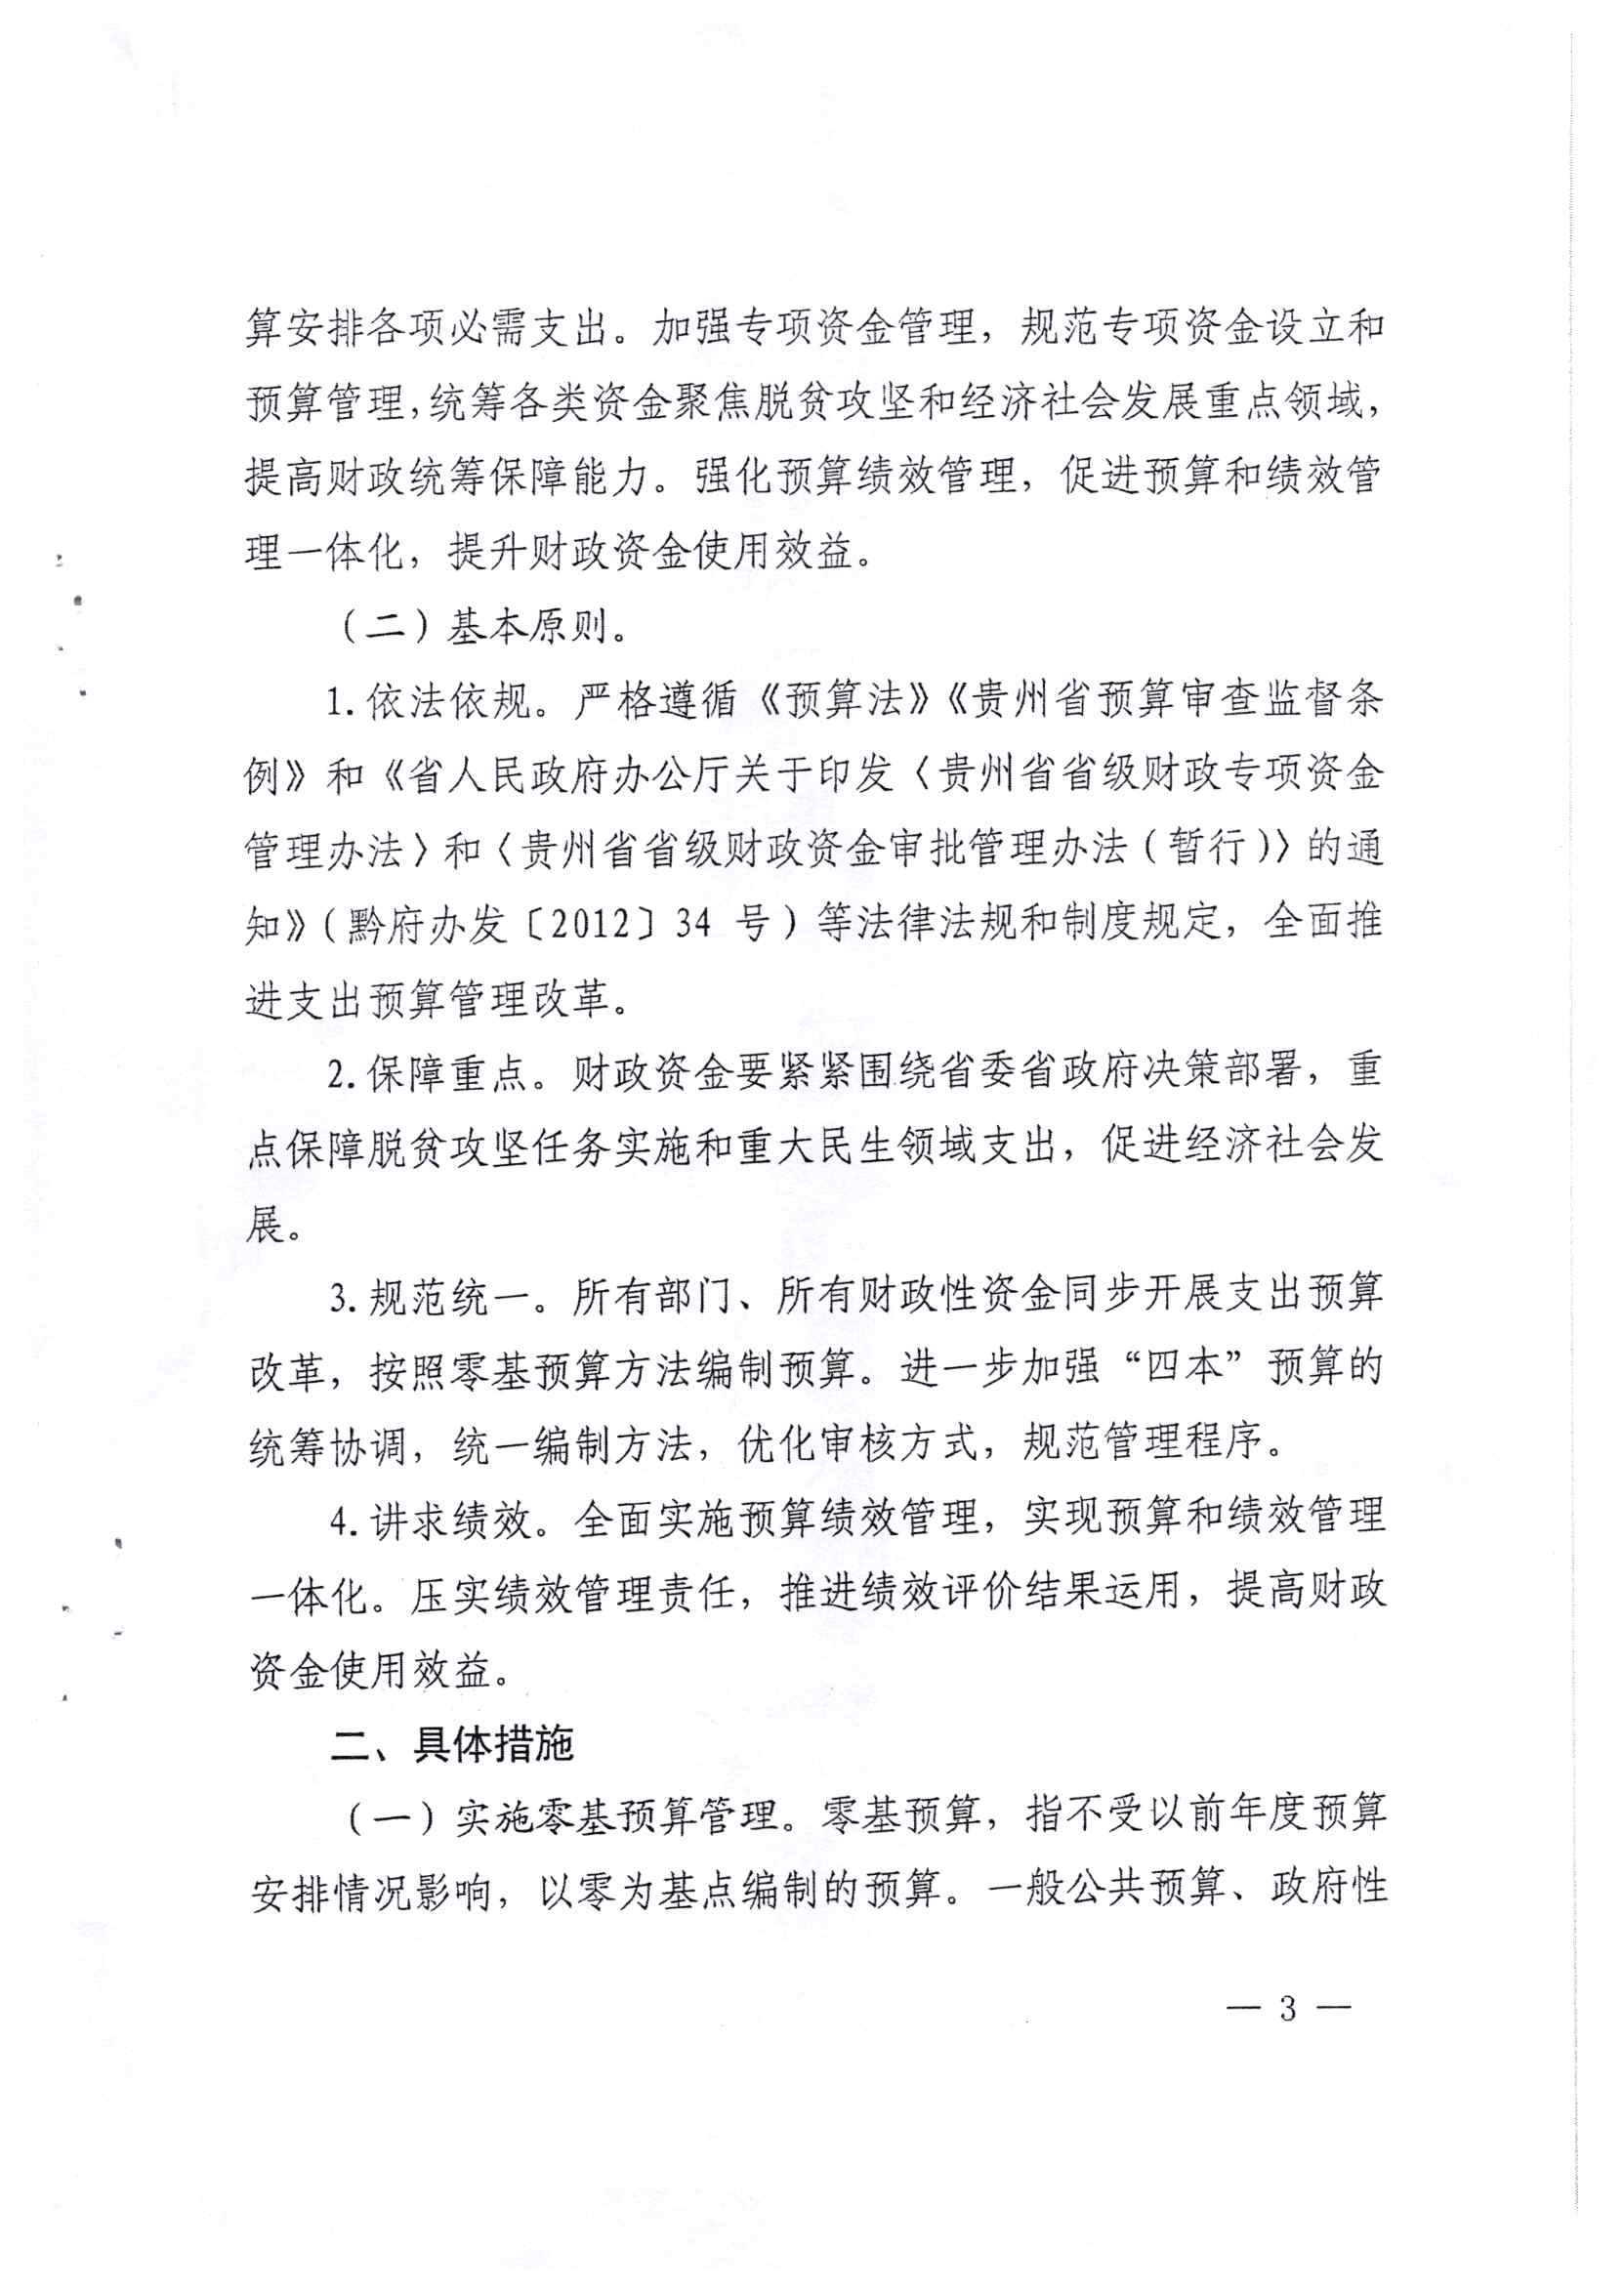 贵州省财政厅关于印发推进省级部门支出预算管理改革方案的通知_页面_3.jpg